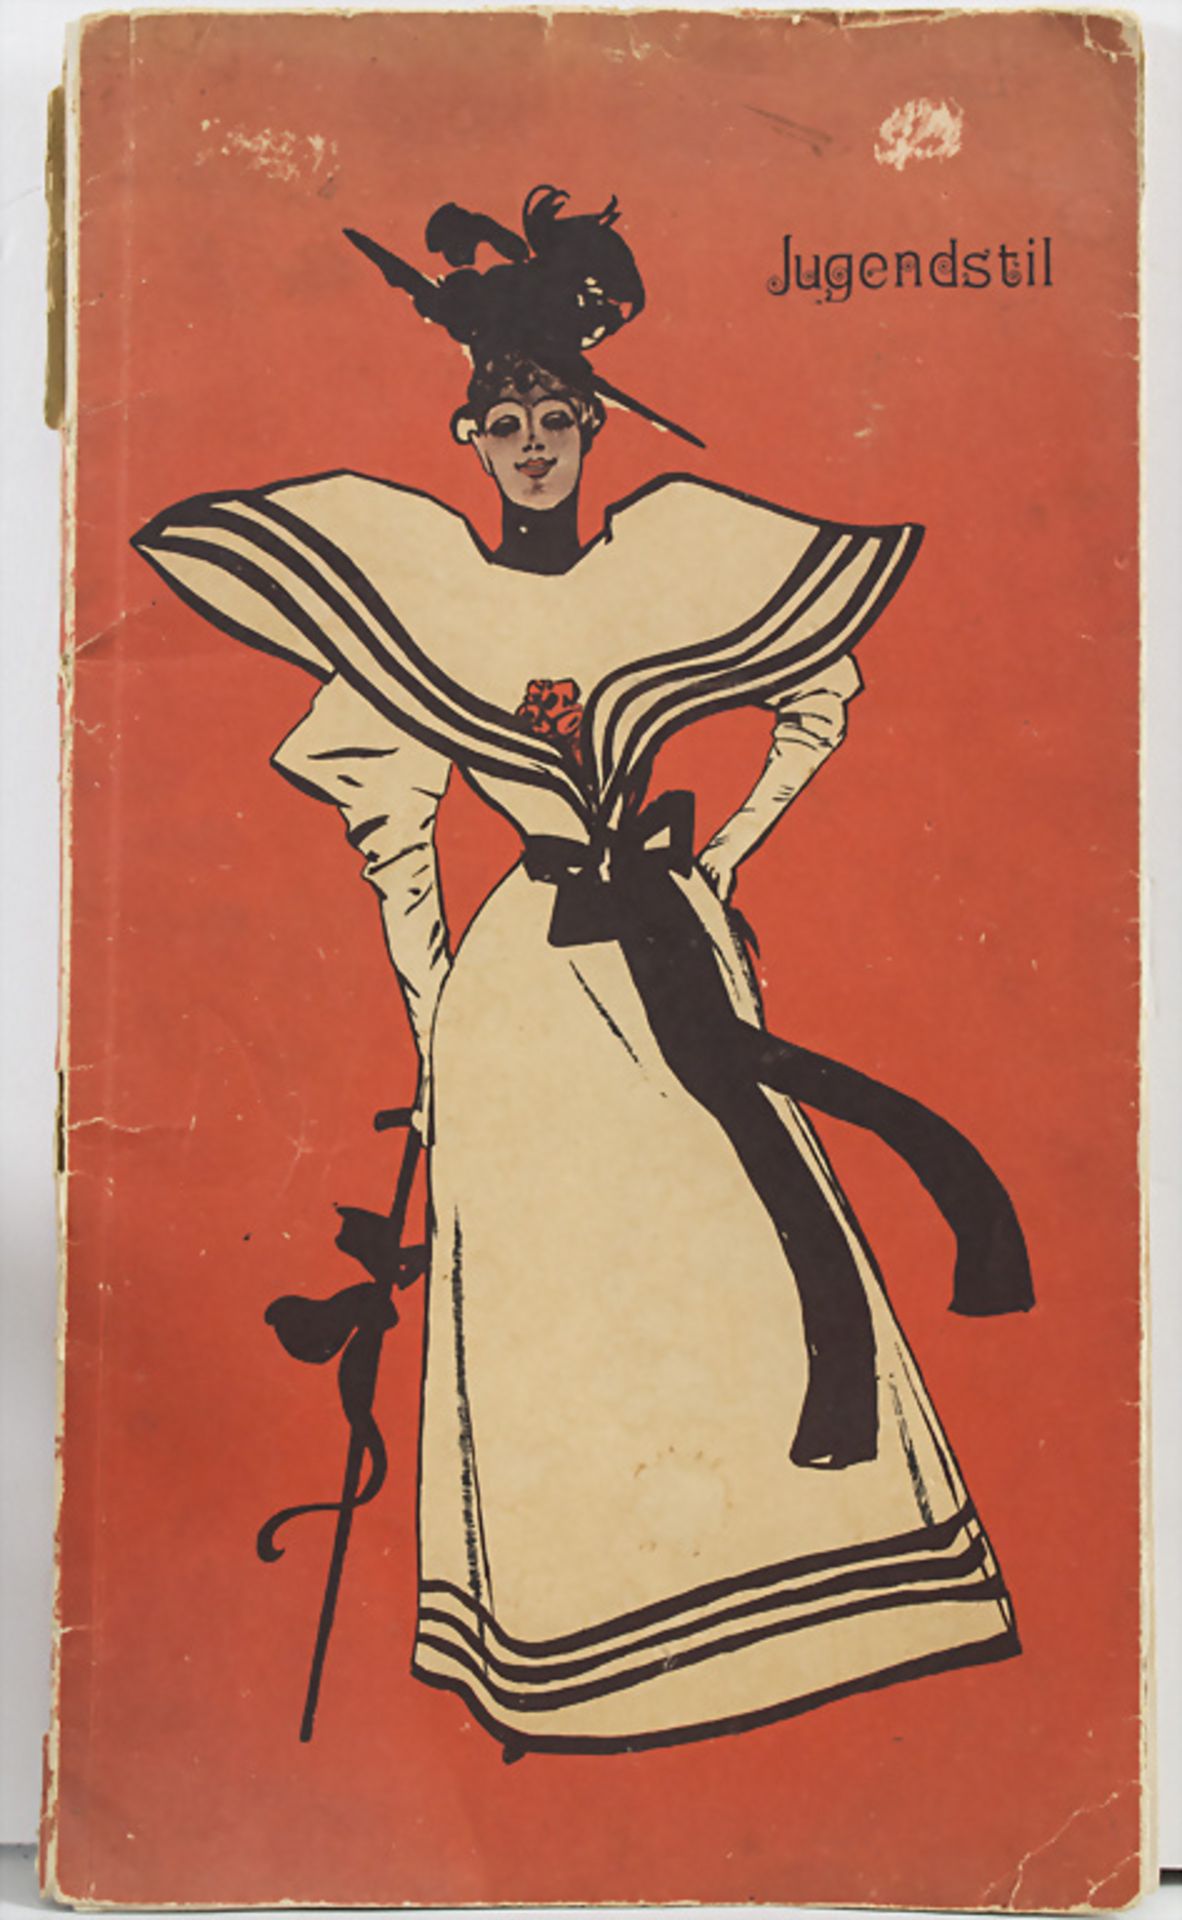 Jugendstil Sammlung Kunstblätter / A collection of Art Nouveau art prints